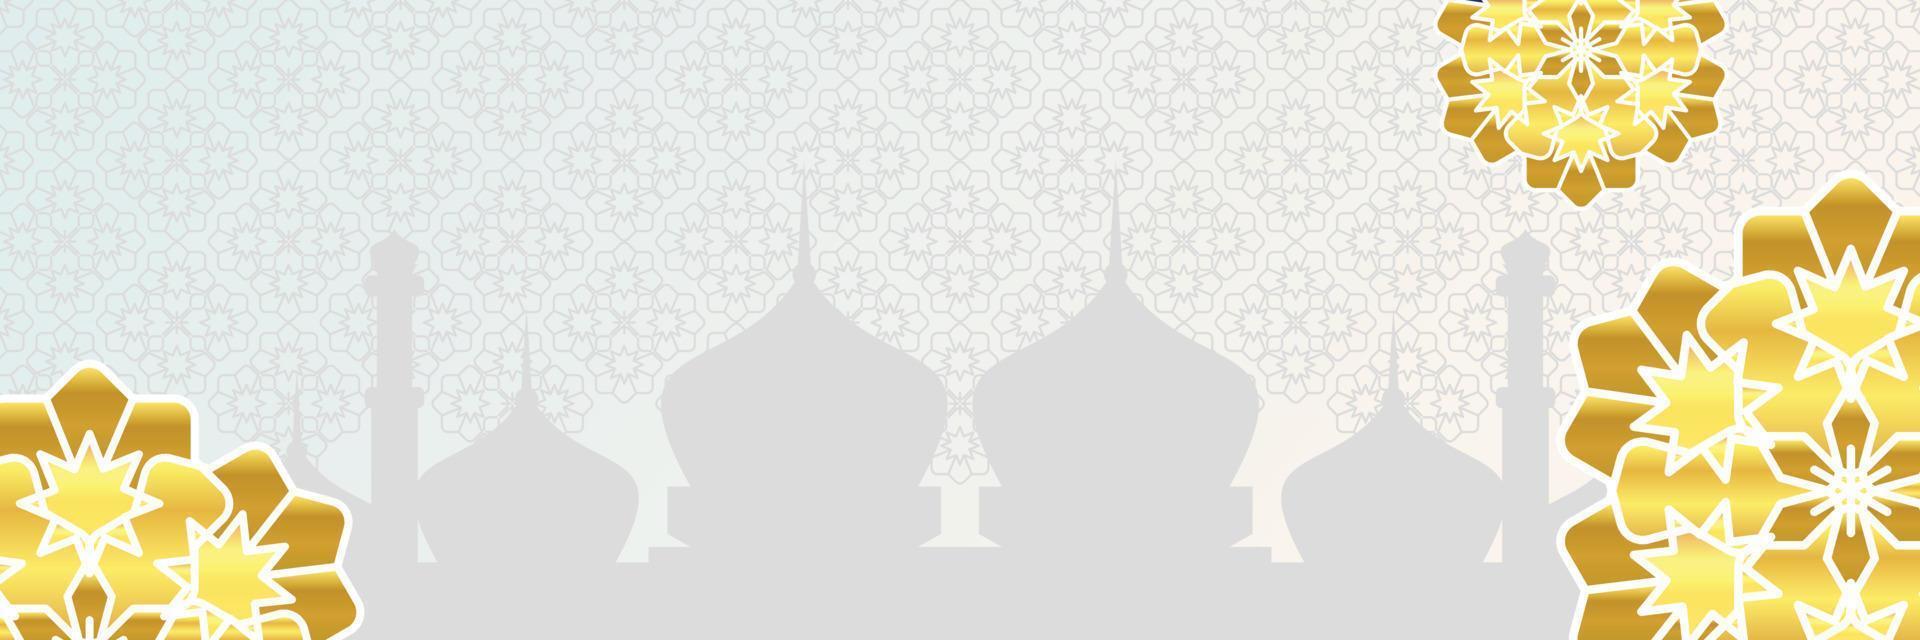 Islamitisch achtergrond, met mooi mandala ornament. vector sjabloon voor spandoeken, groet kaarten voor Islamitisch vakantie, eid al fitr, ramadan, eid al adha